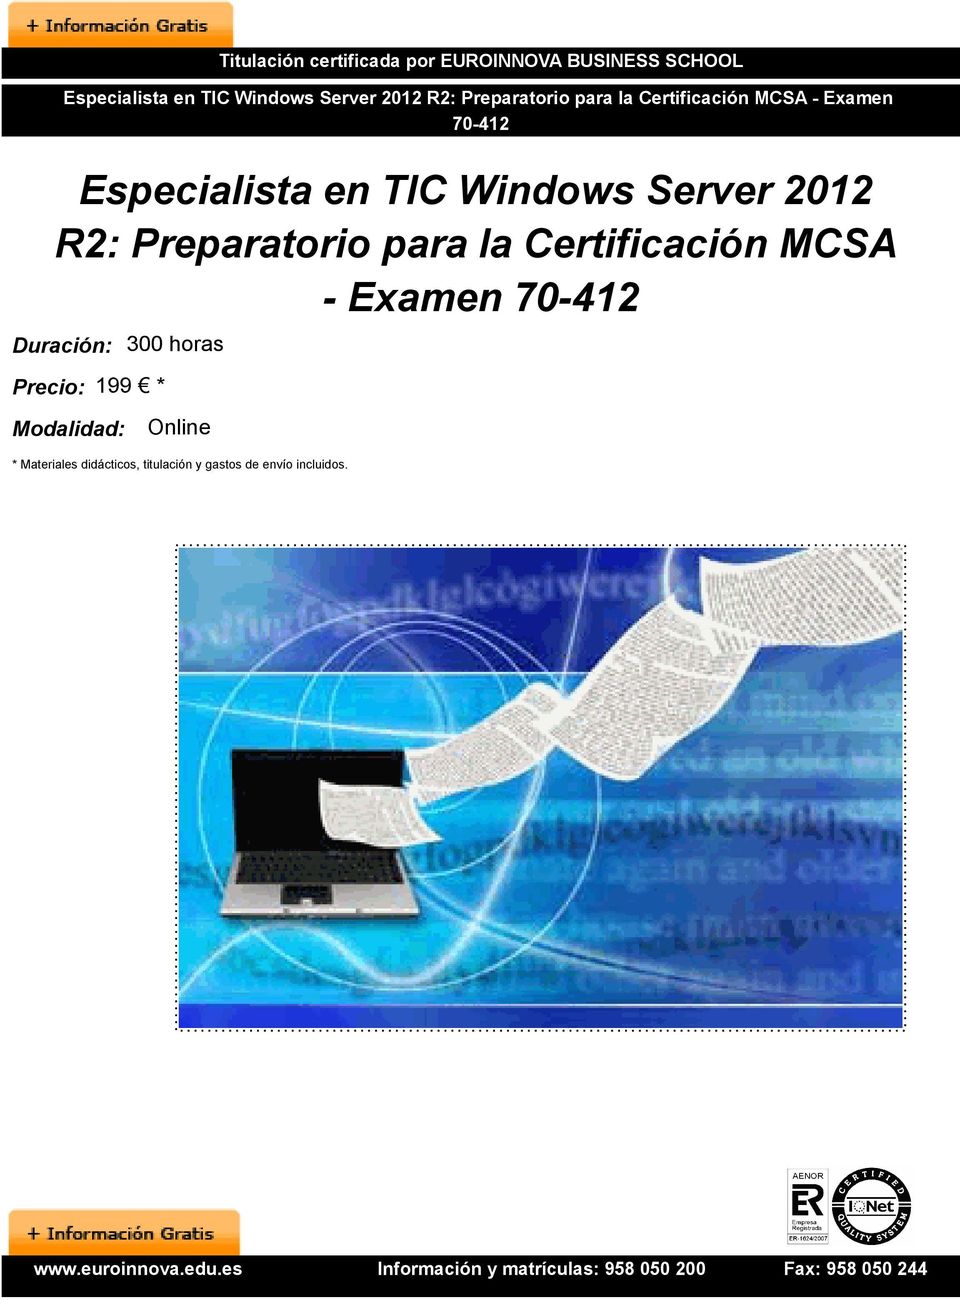 Server 2012 R2: Preparatorio para la Certificación MCSA - Examen Duración: 300 horas